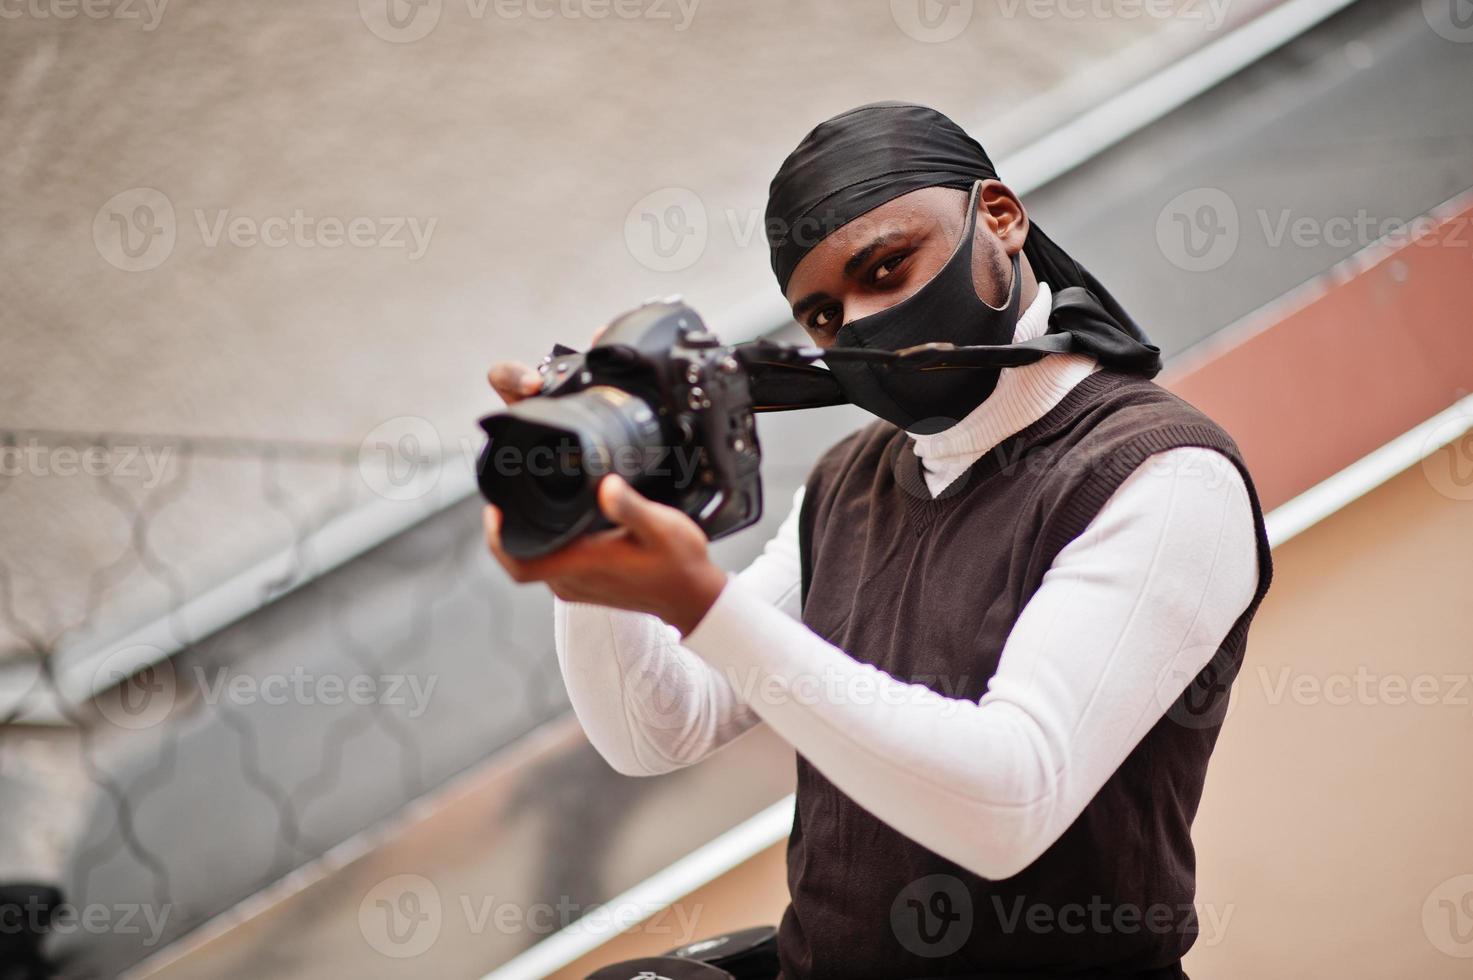 jeune vidéaste afro-américain professionnel tenant une caméra professionnelle avec un équipement professionnel. caméraman afro portant du duraq noir et un masque de protection du visage, faisant des vidéos. photo